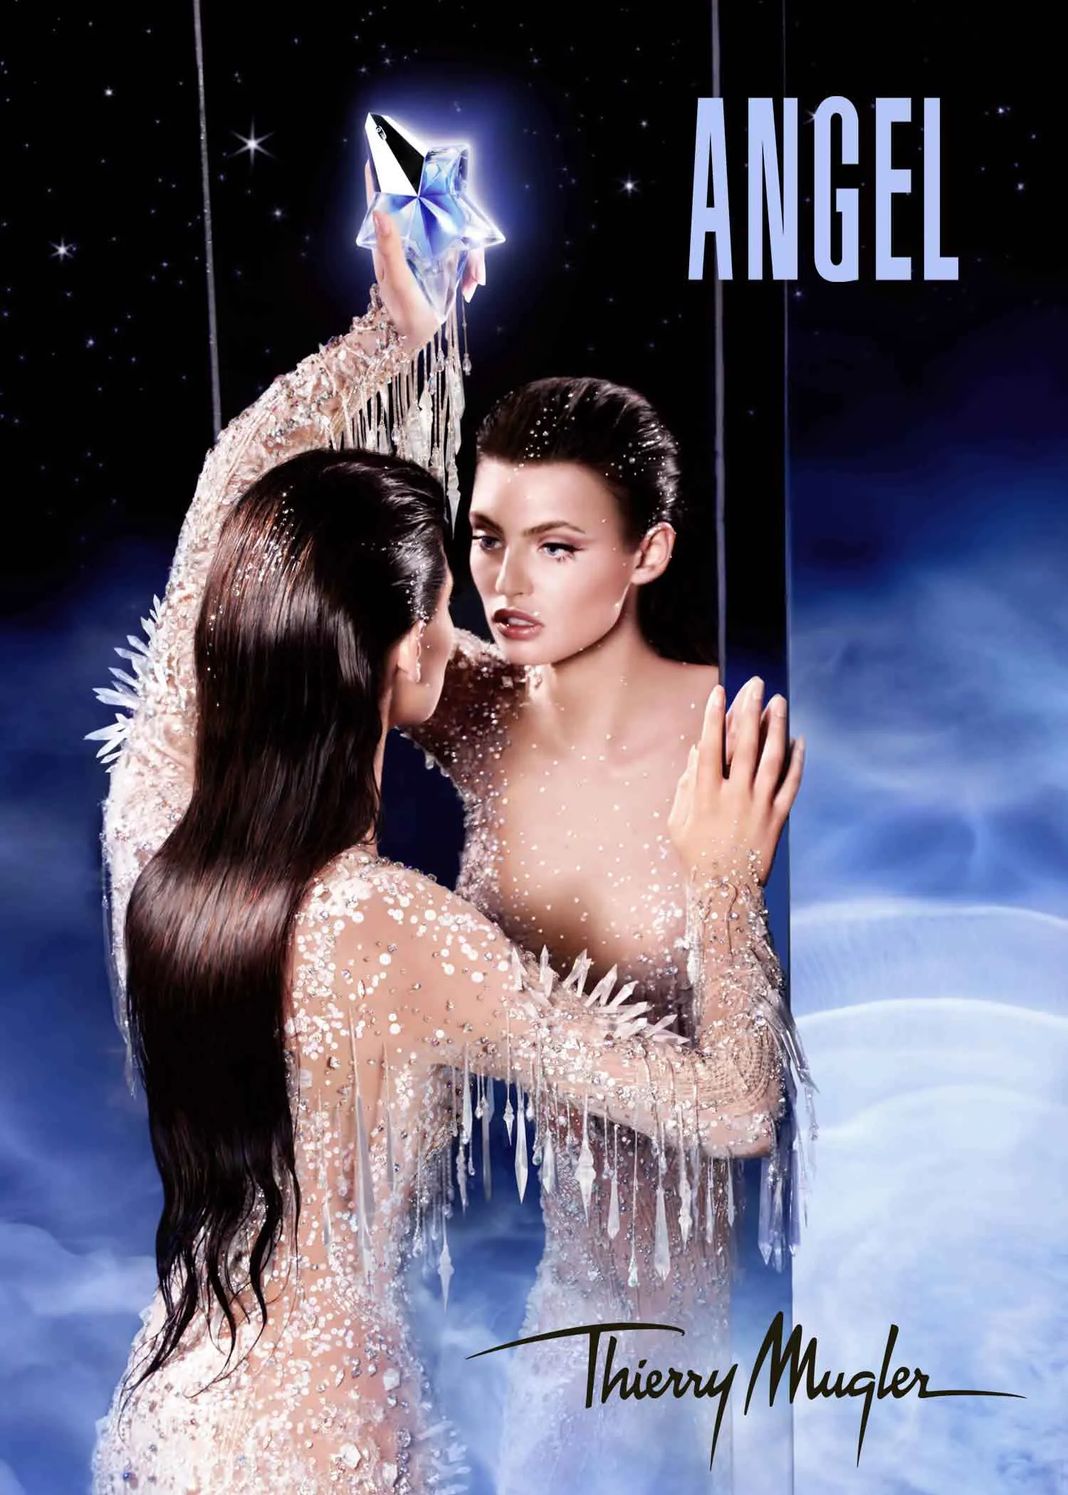 Бьянка Балти в рекламной кампании аромата Angel Mugler